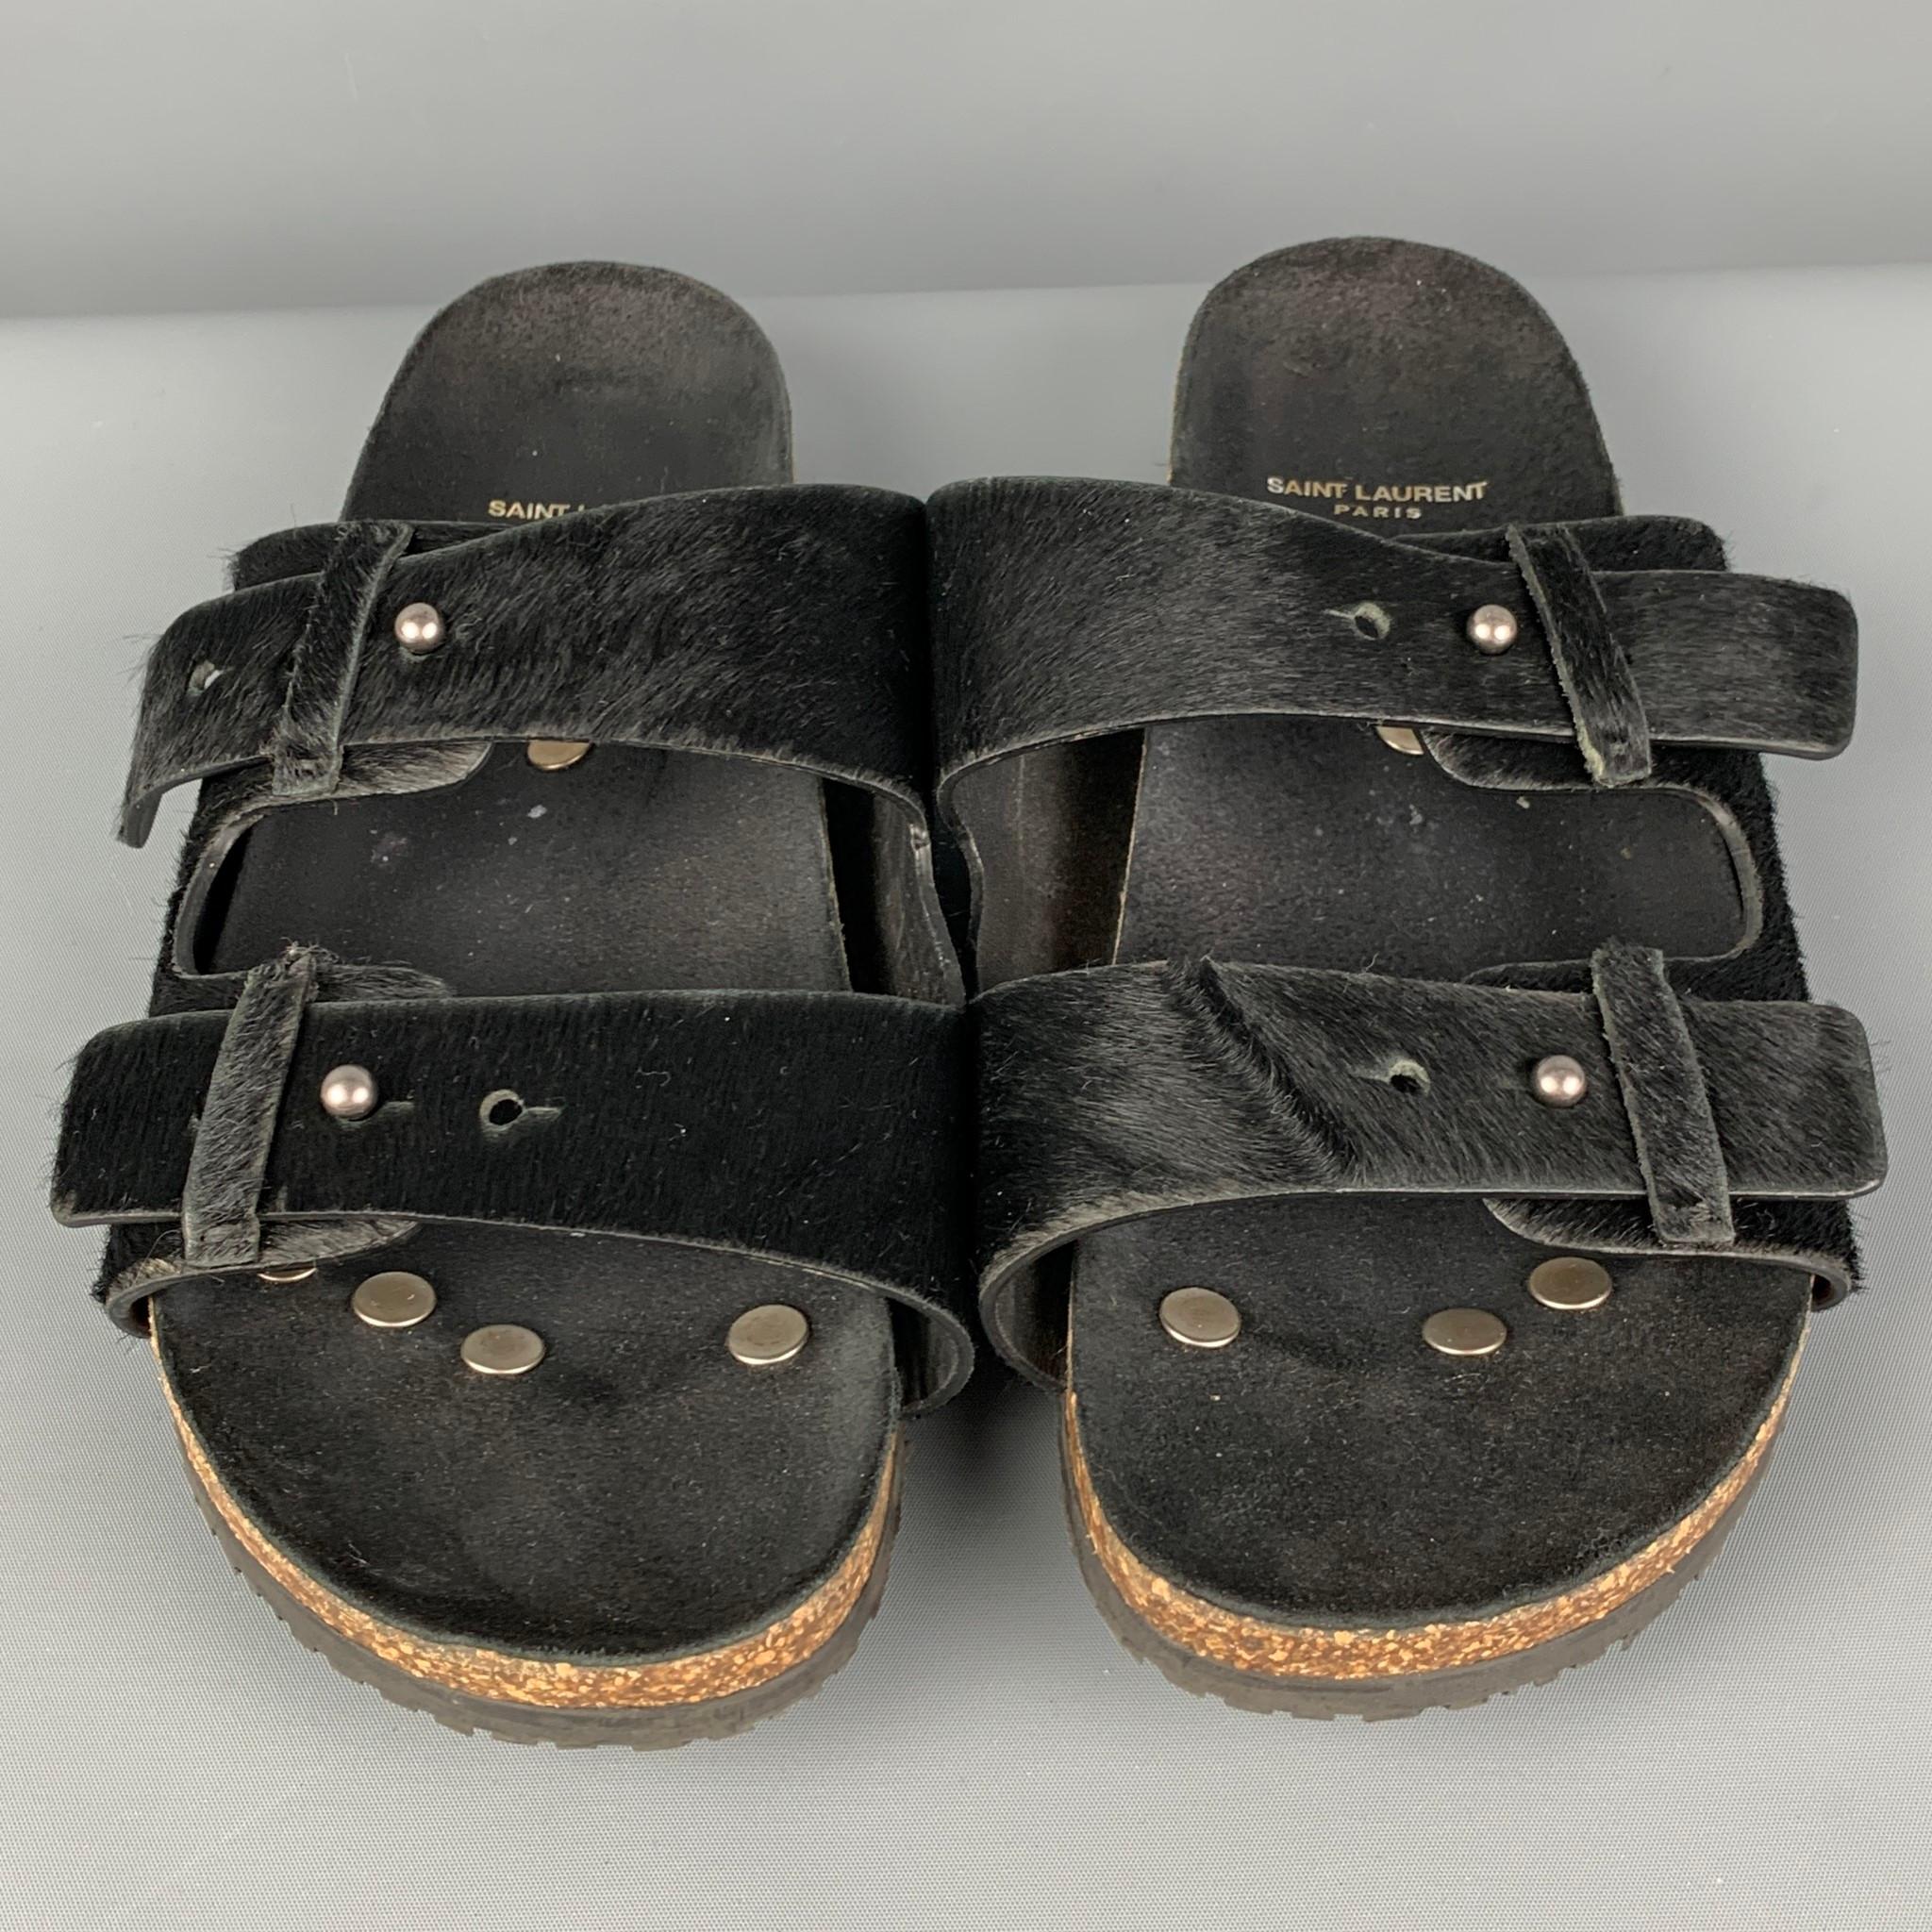 Men's SAINT LAURENT Size 9 Black Textured Leather Jimmy Flat Sandals